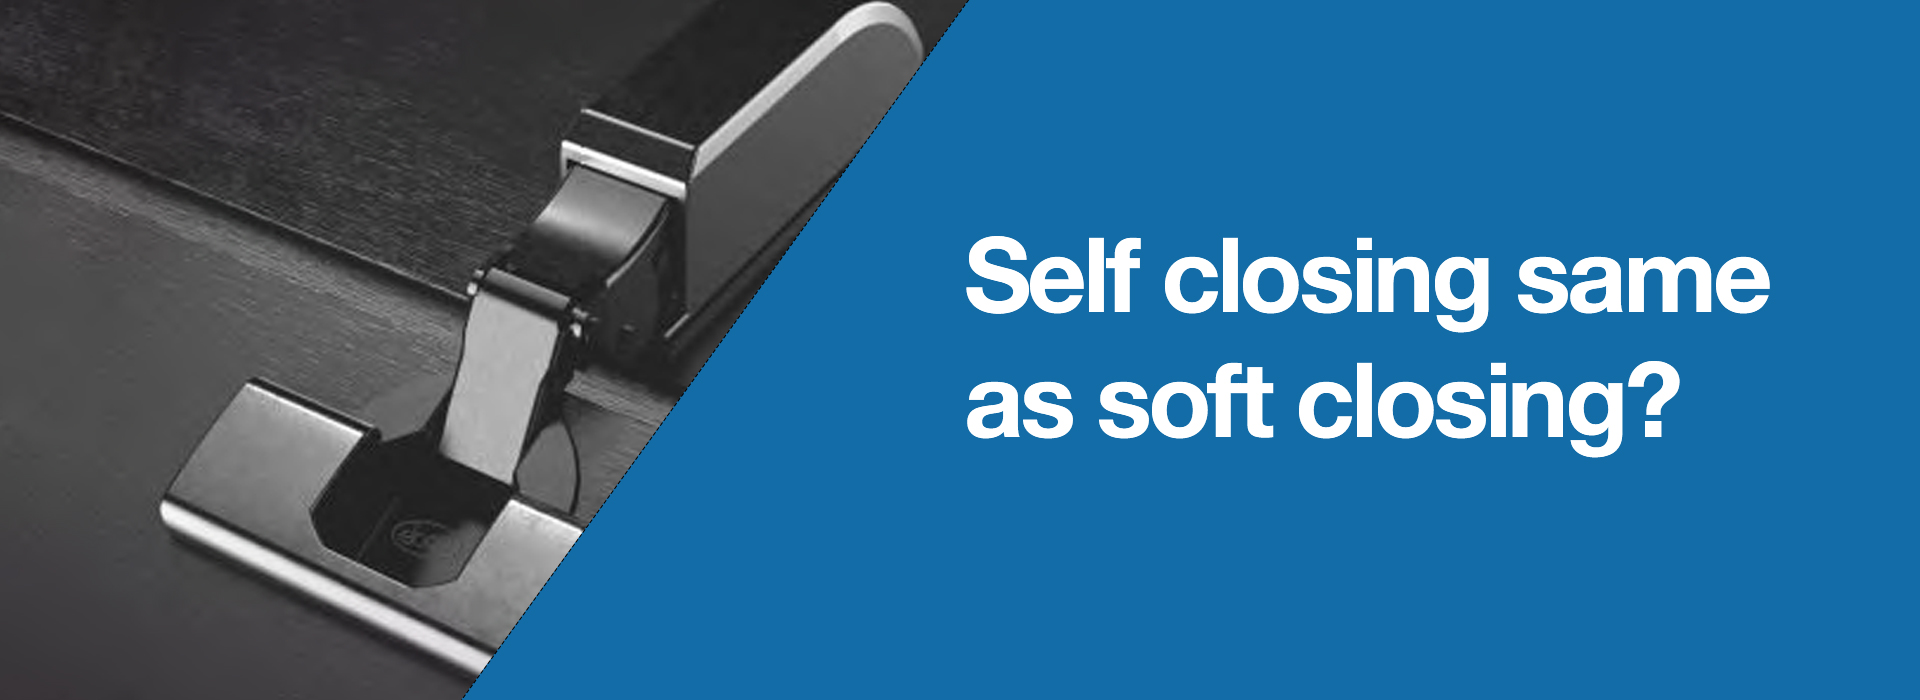 Self closing same as soft closing